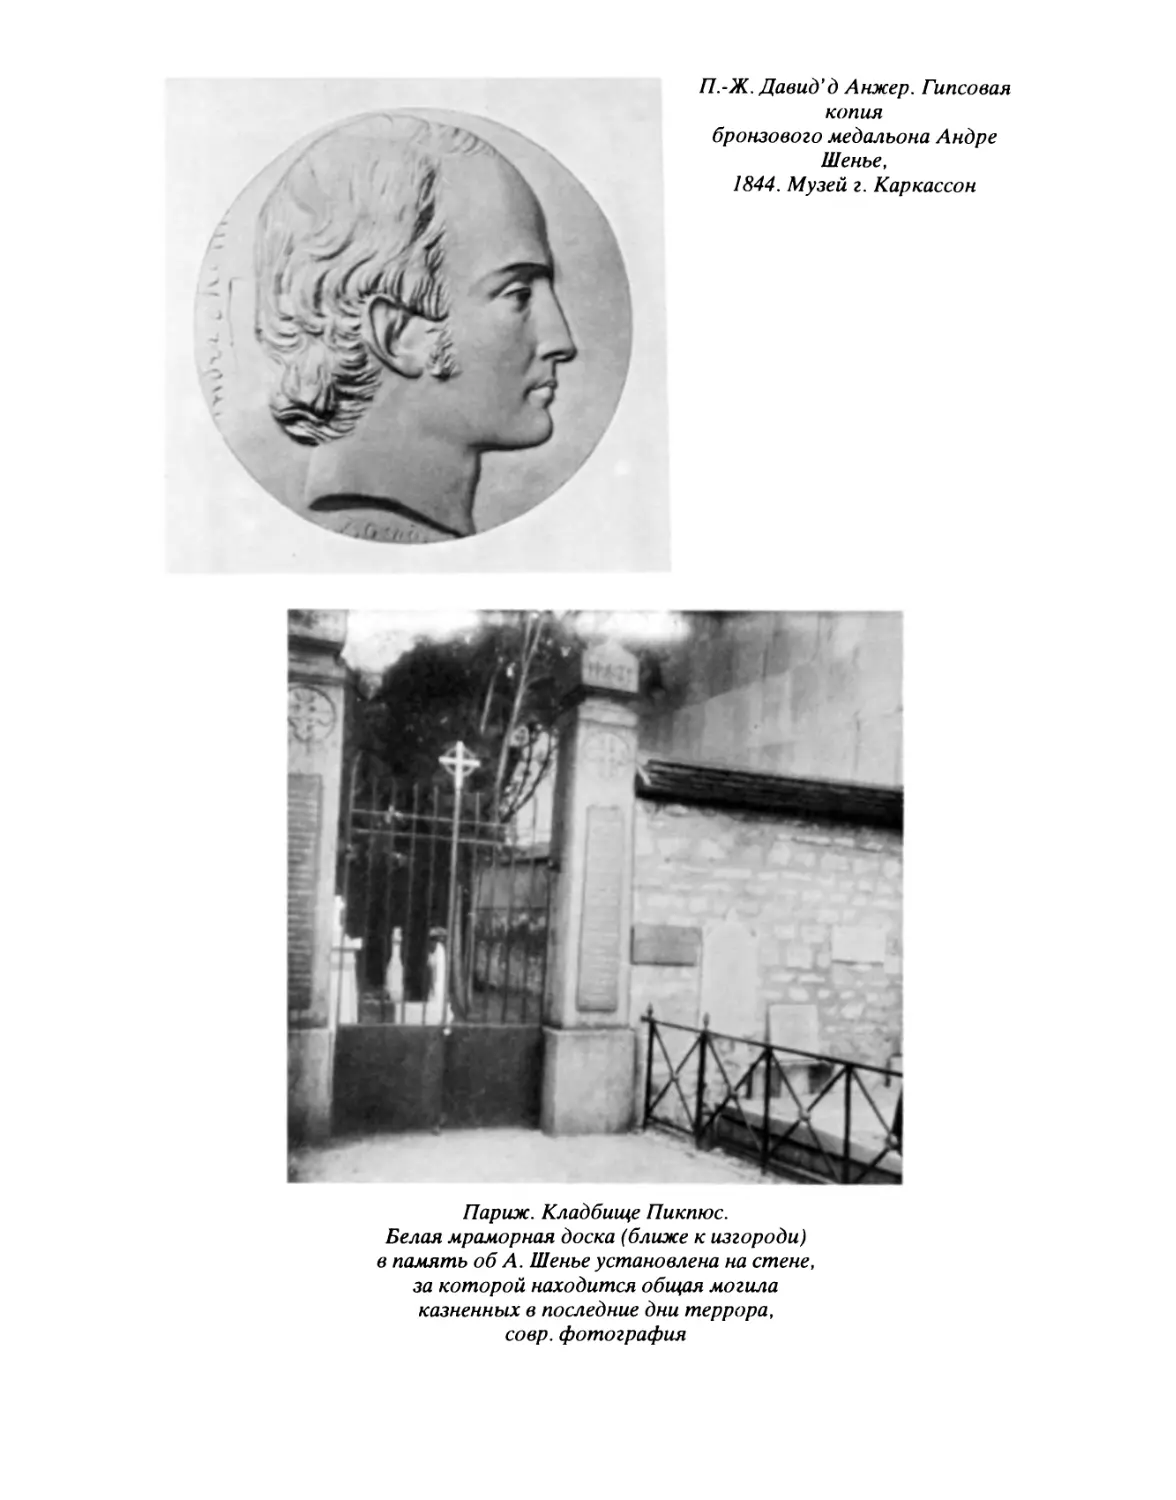 П.-Ж. Давид д'Анжер. Гипсовая копия бронзового медальона Андре Шенье, 1844; Париж. Кладбище Пикпюс